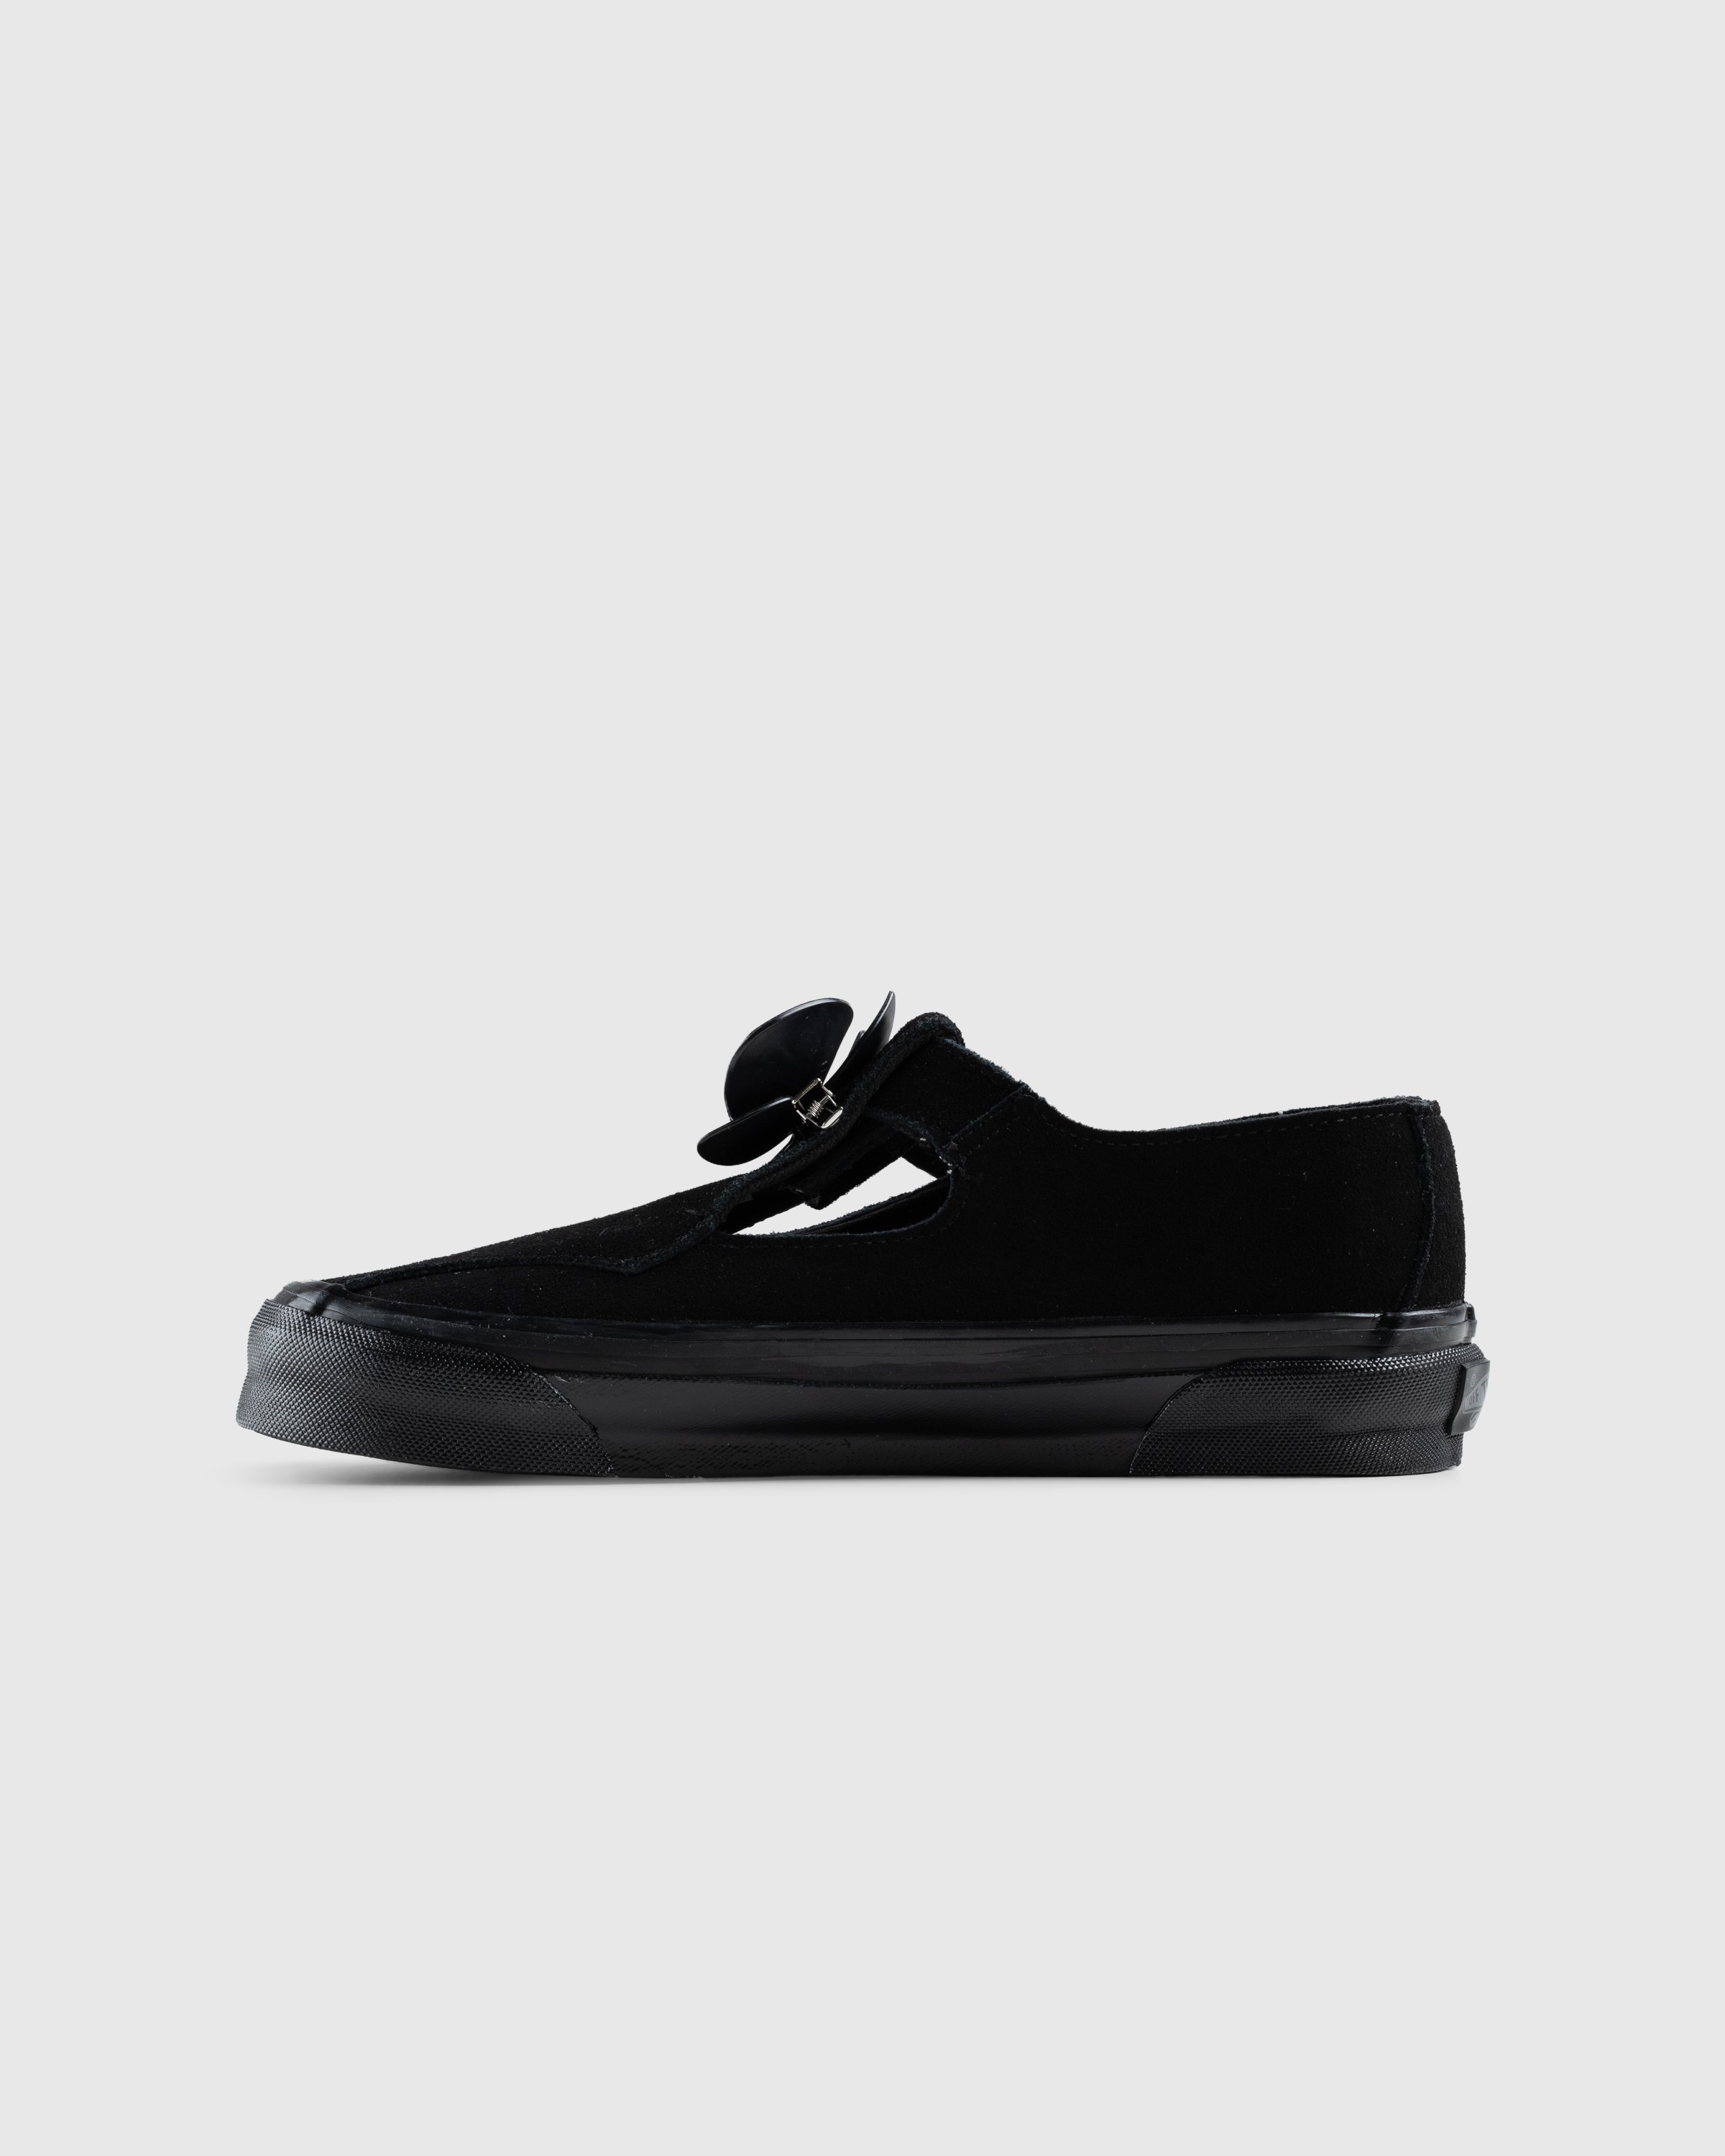 Vans - OG Style 93 LX Black - Footwear - Black - Image 2